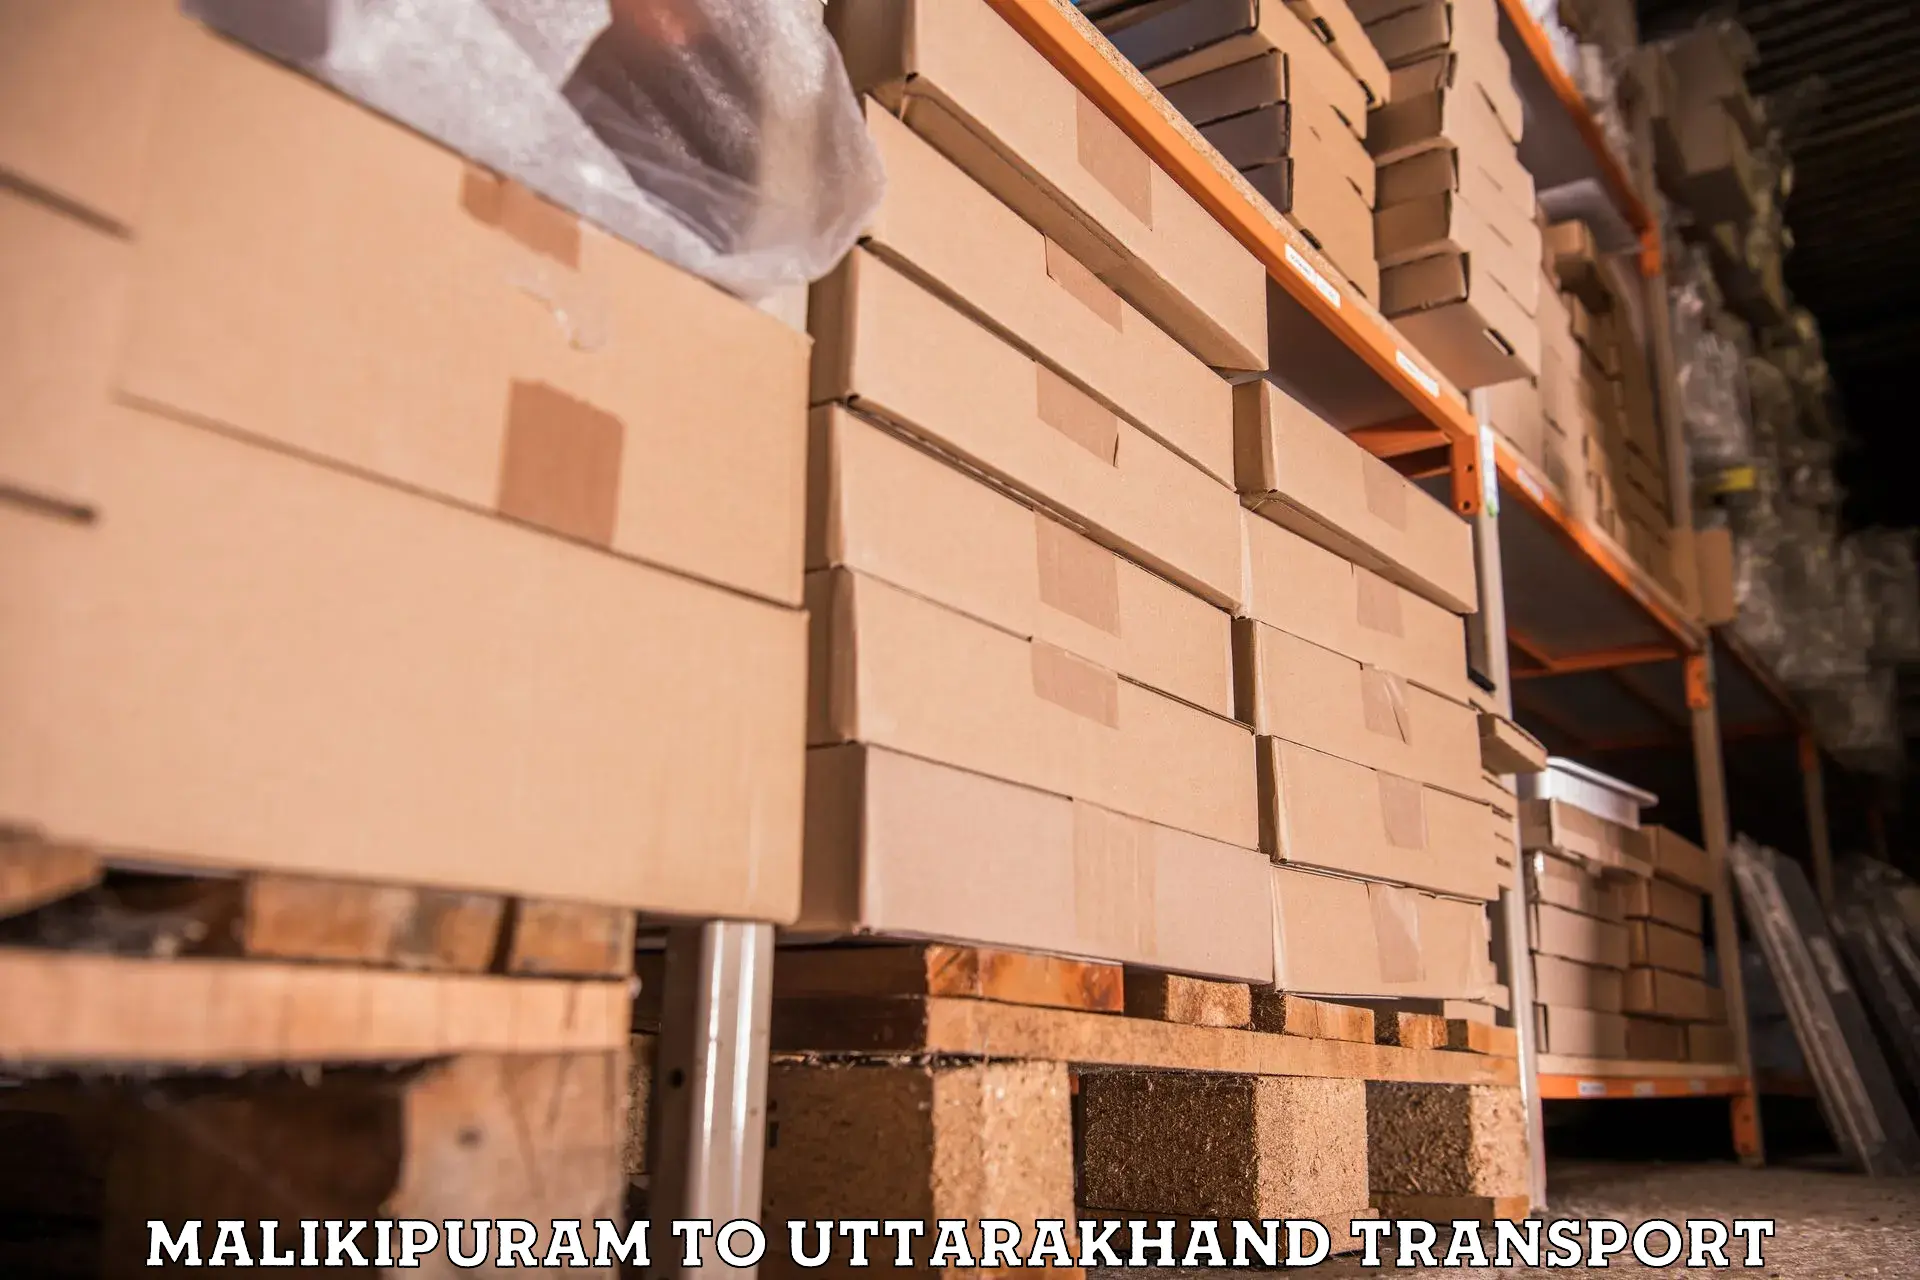 International cargo transportation services Malikipuram to NIT Garhwal